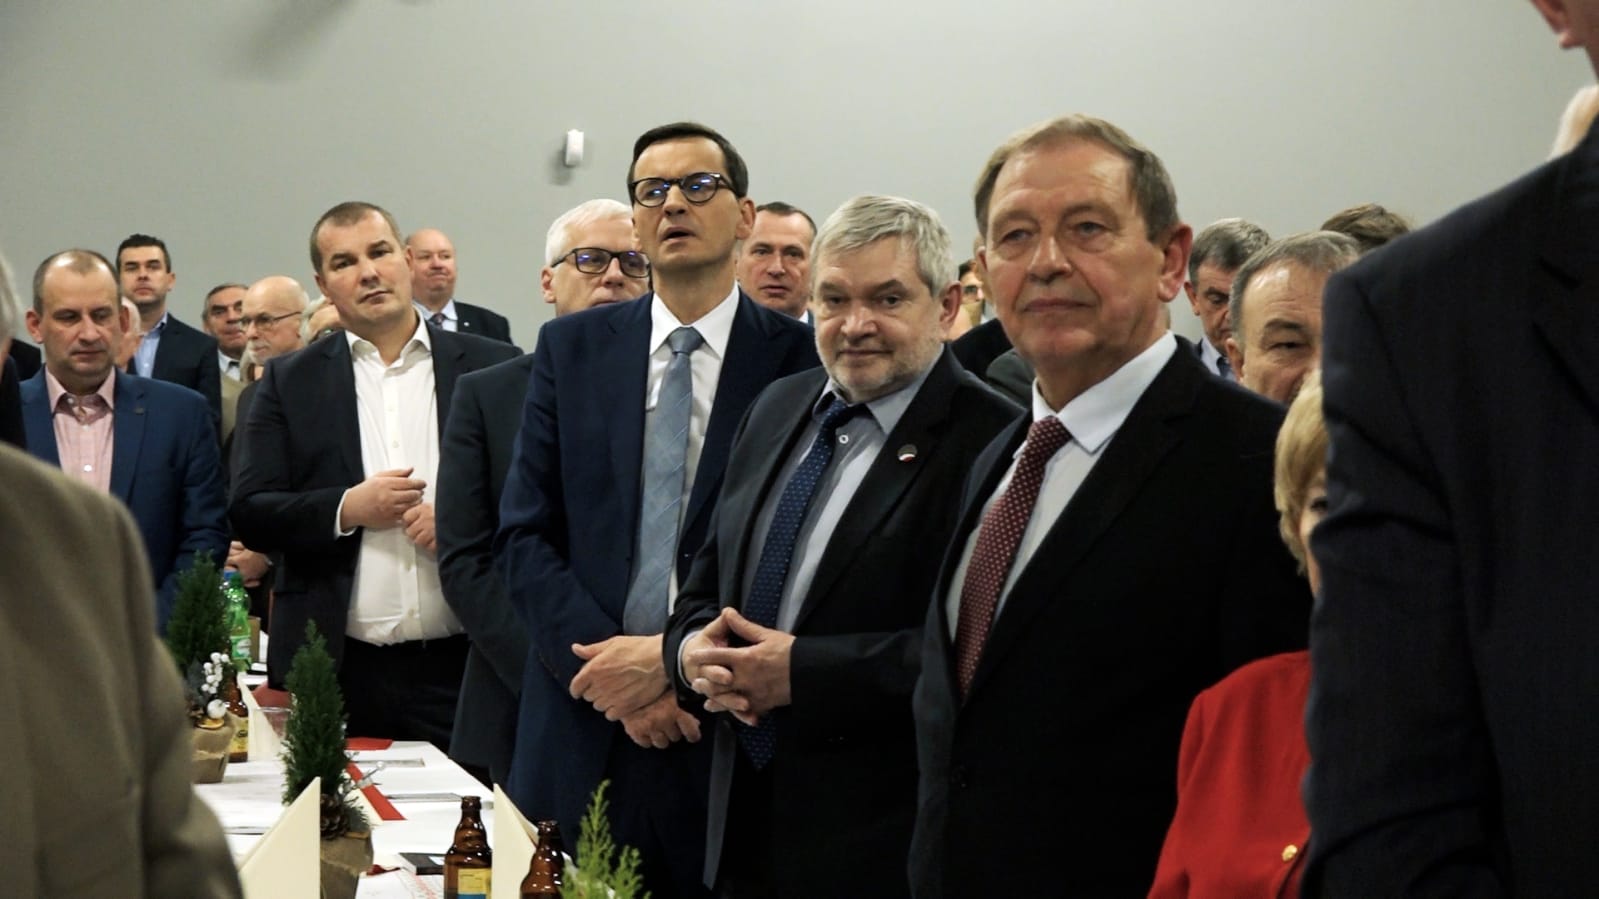 Spotkanie wigilijne z udziałem Premiera Morawieckiego